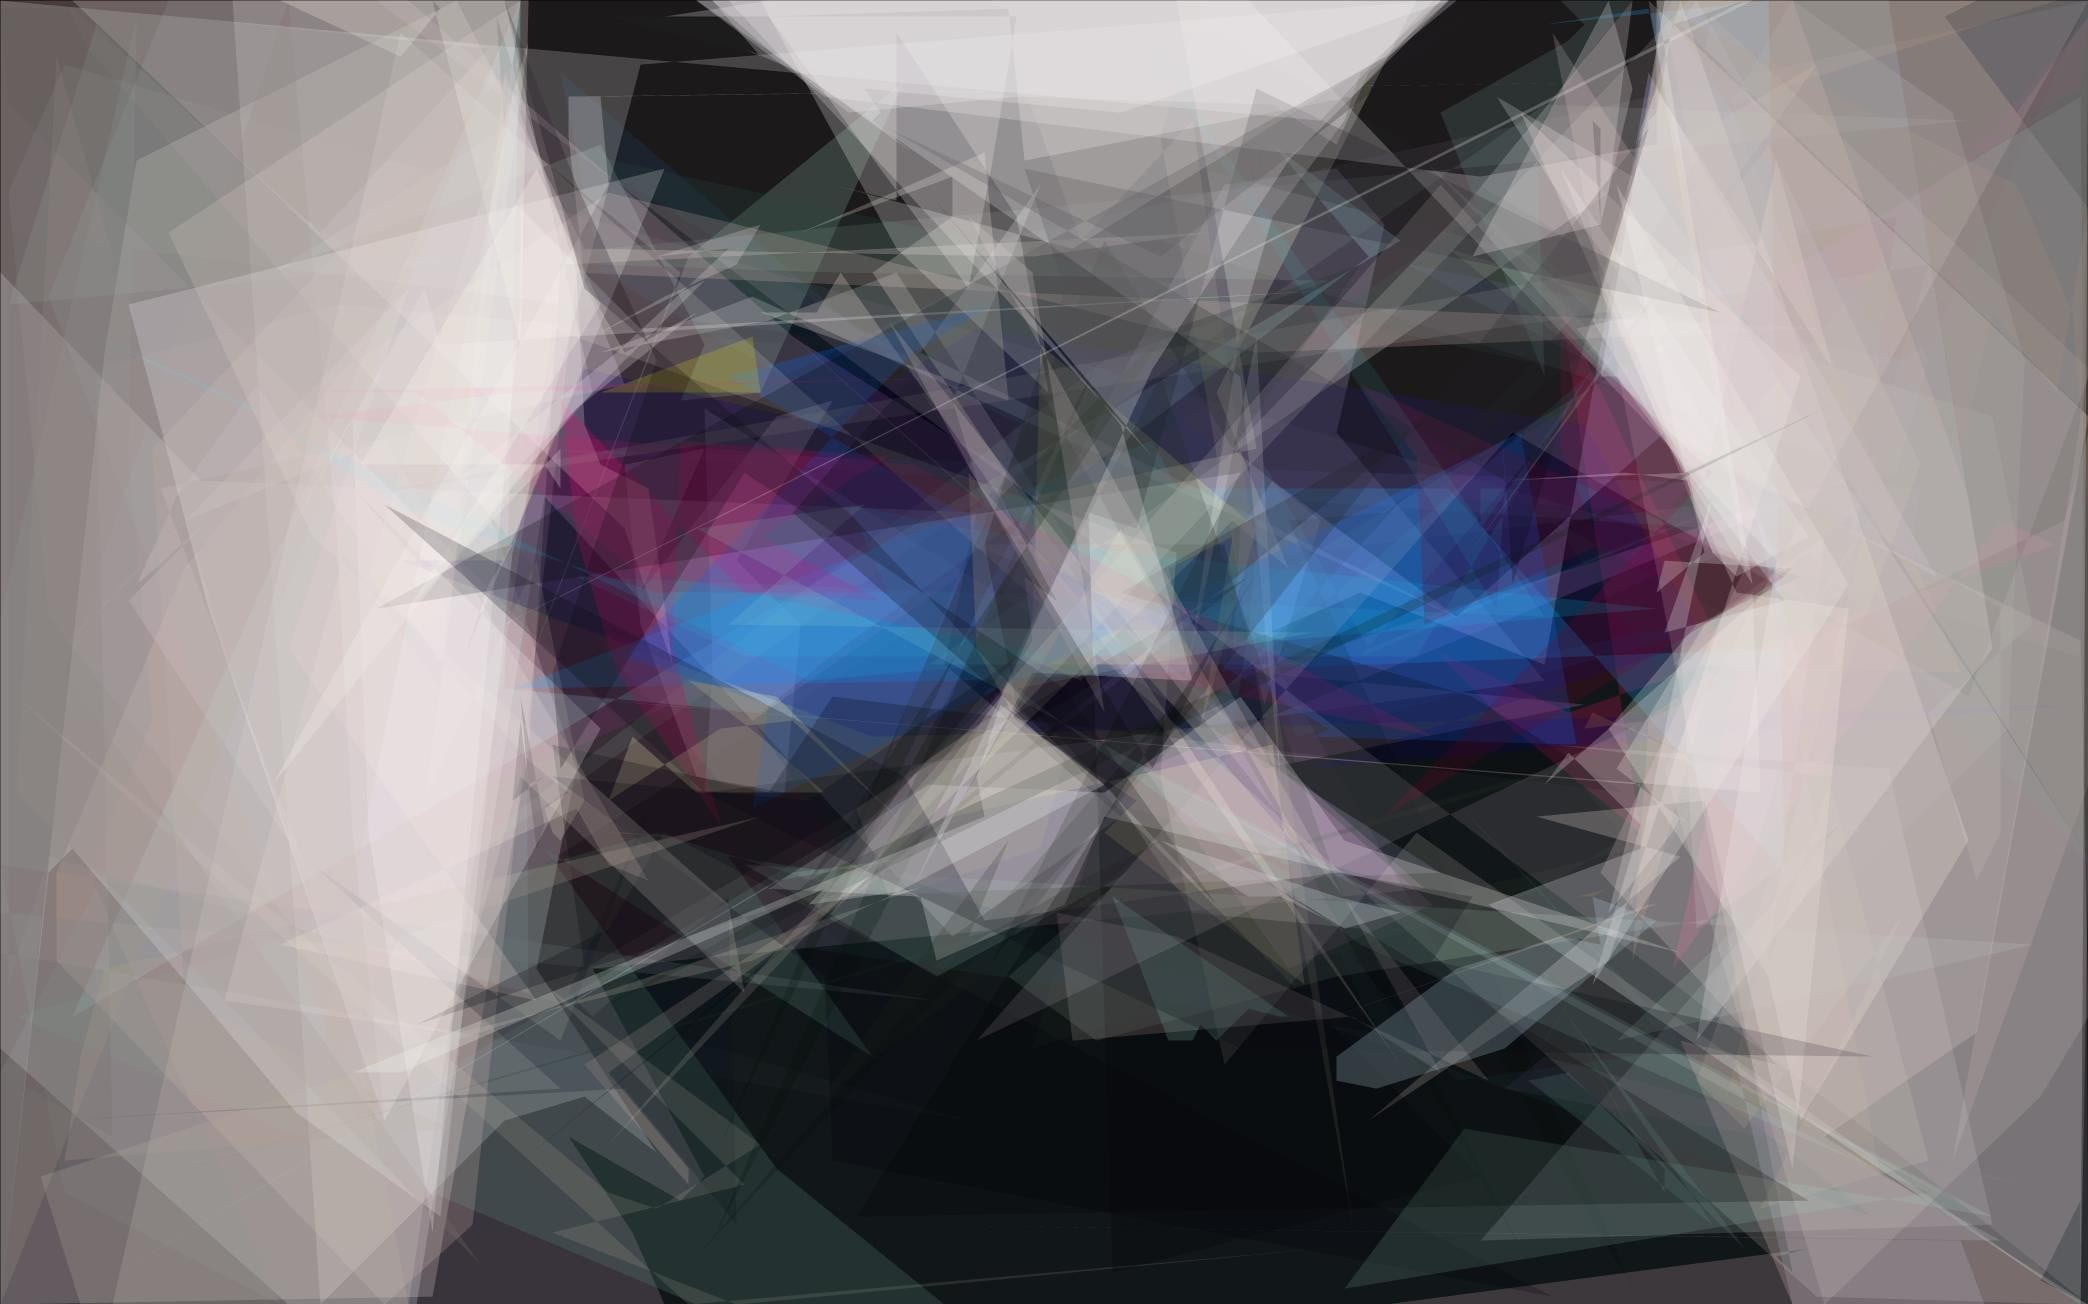 cat clip art, cat 3D wallpaper, sunglasses, digital art, animals